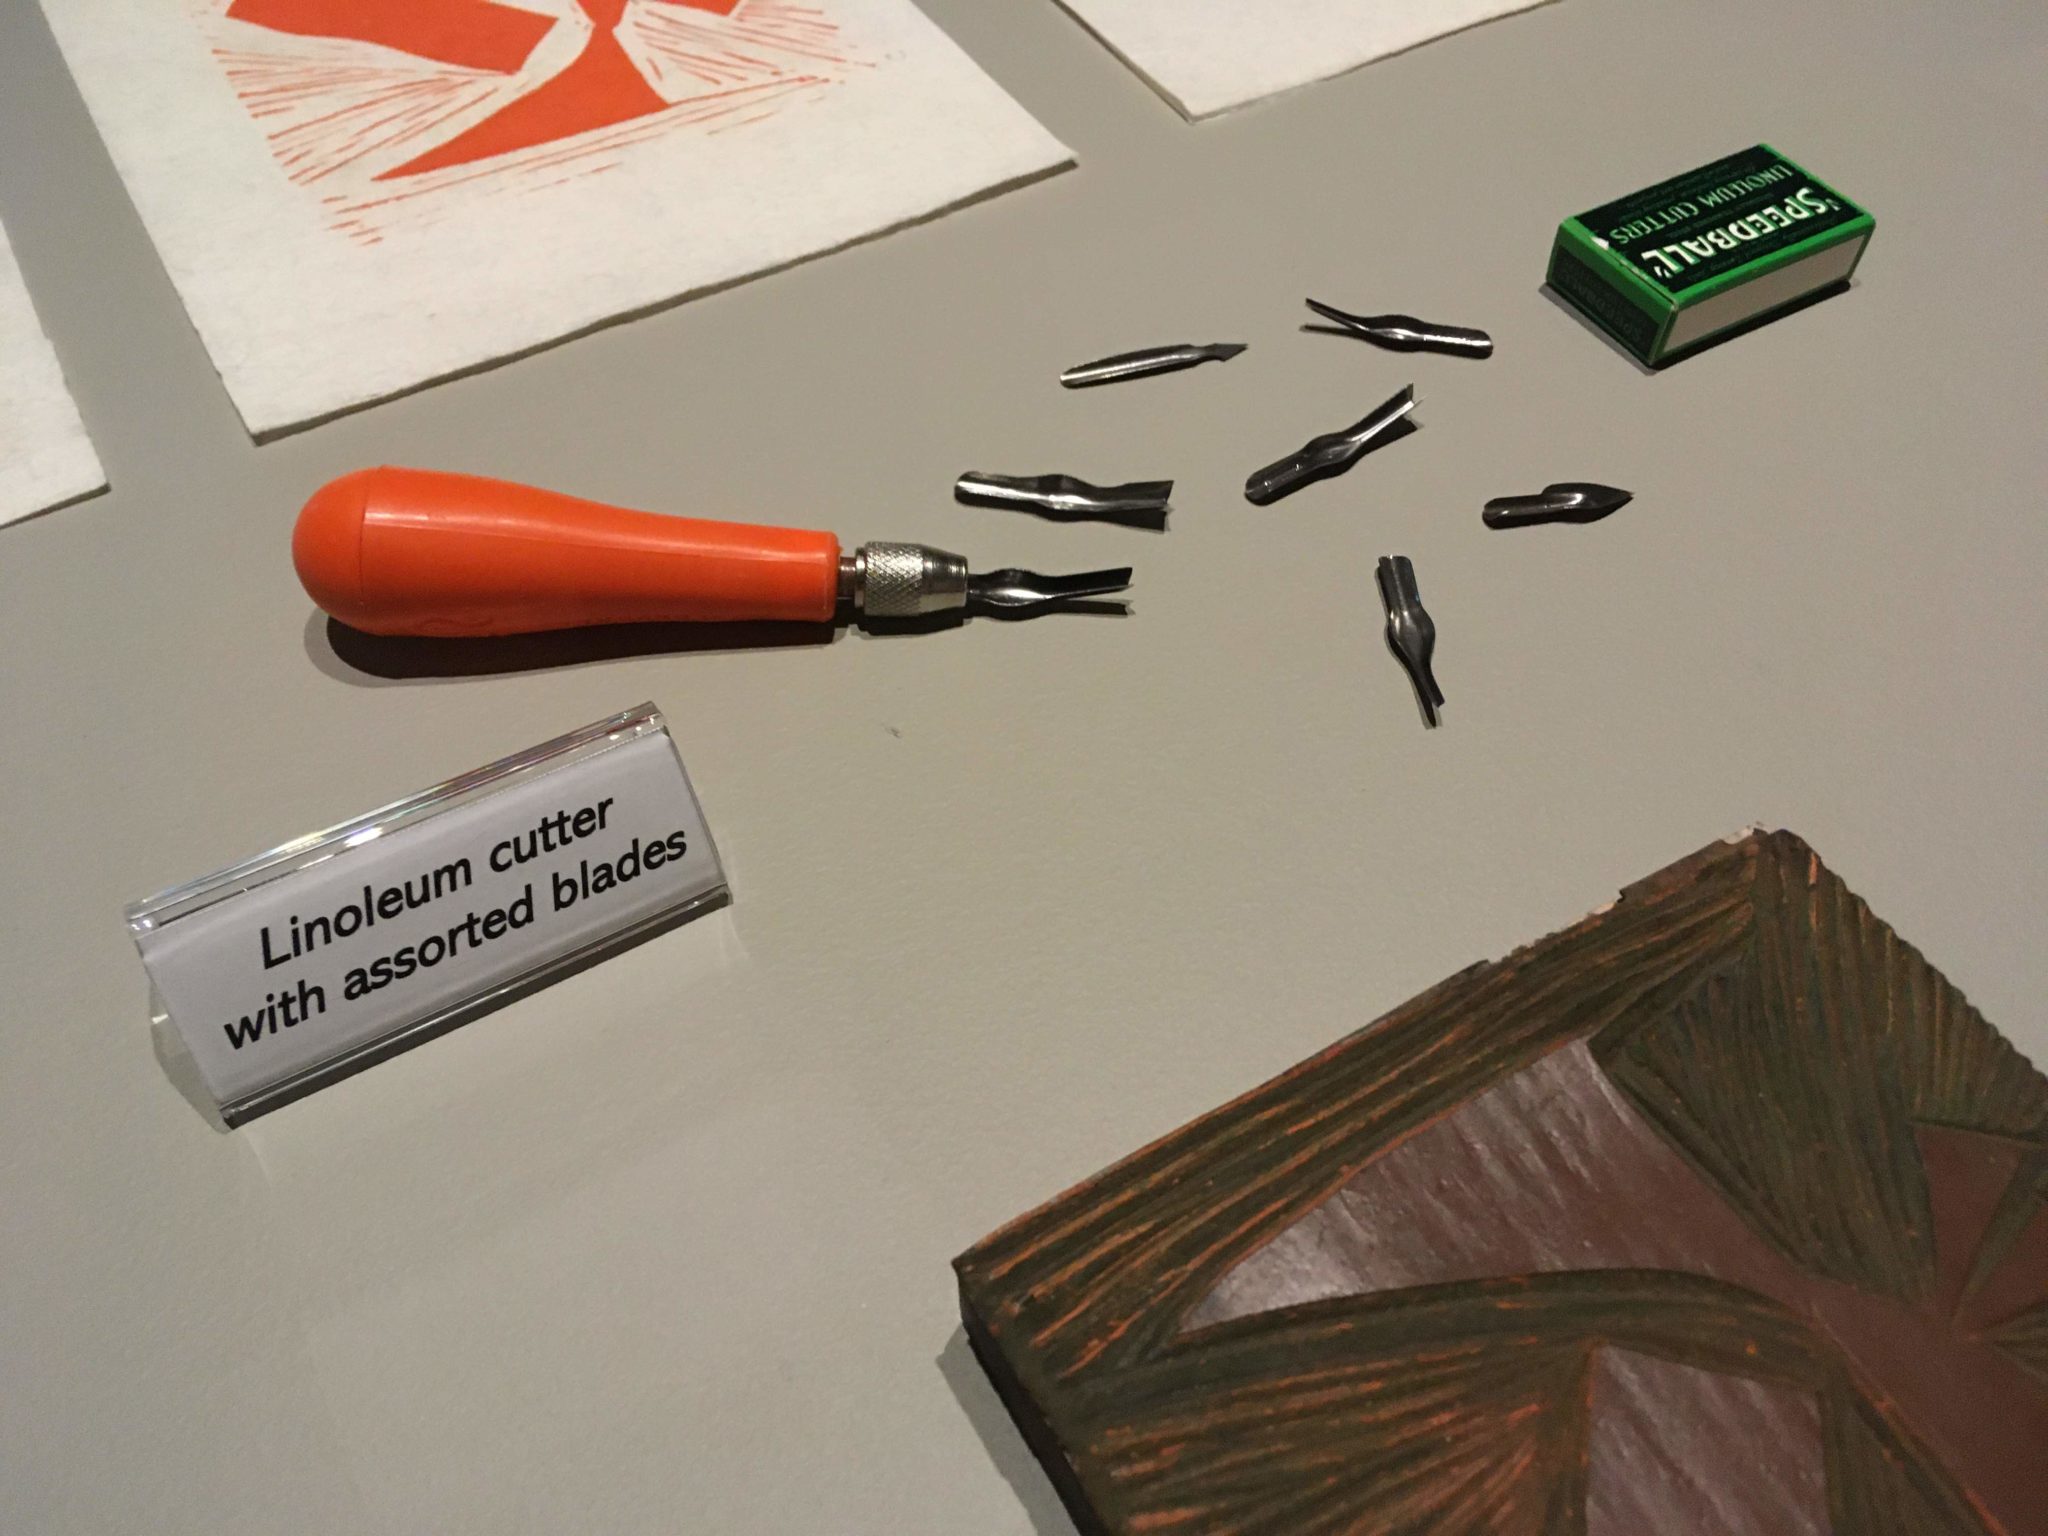 Linoleum cutter with assorted blades